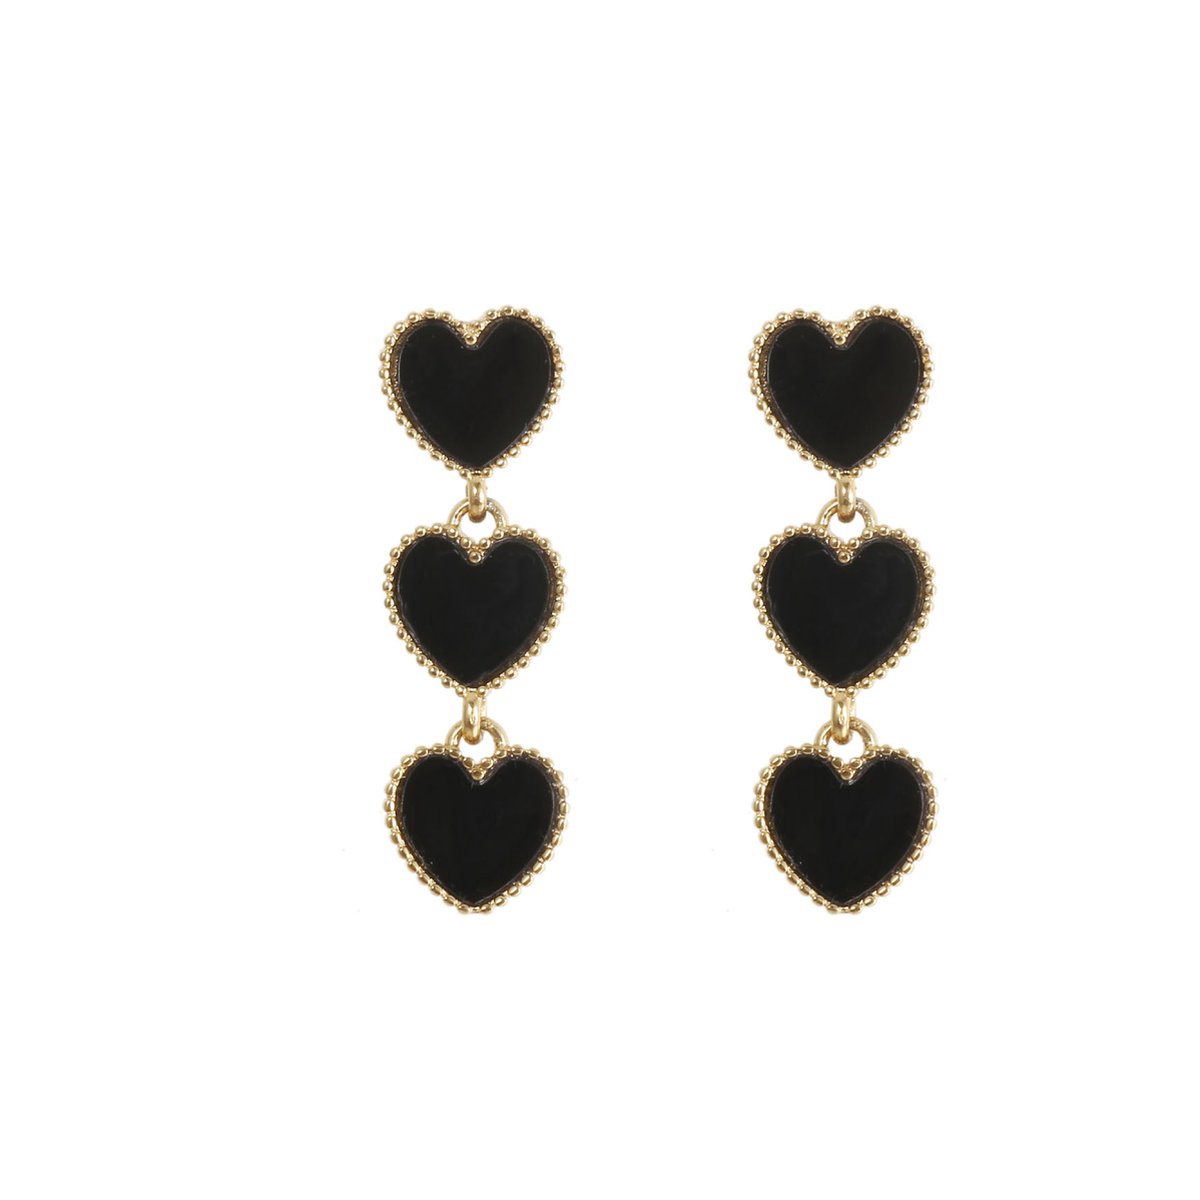 The Jewellery Club - Bo heart earrings black - Oorbellen - Dames oorbellen - Stainless steel - Goud - 4,2 cm - The Jewellery Club